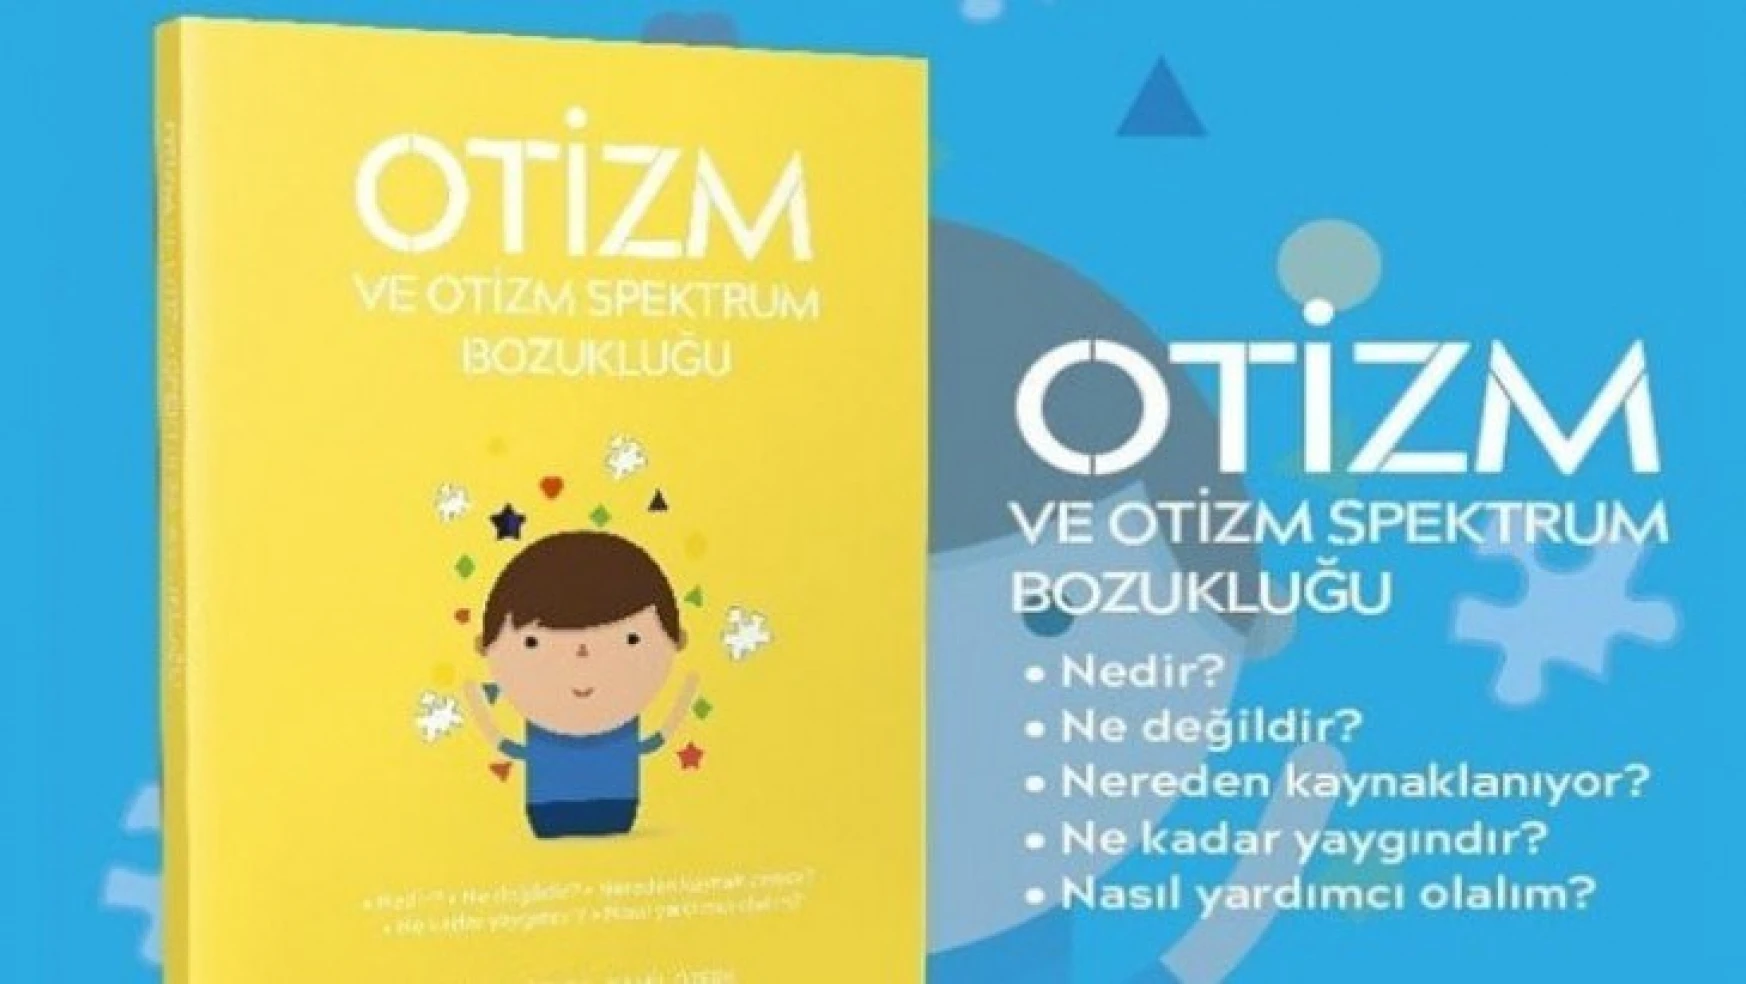 Türk Bilim İnsanlarının Veliler İçin Hazırladığı 'Otizm' Kitabı, Dijital Kütüphanemizde